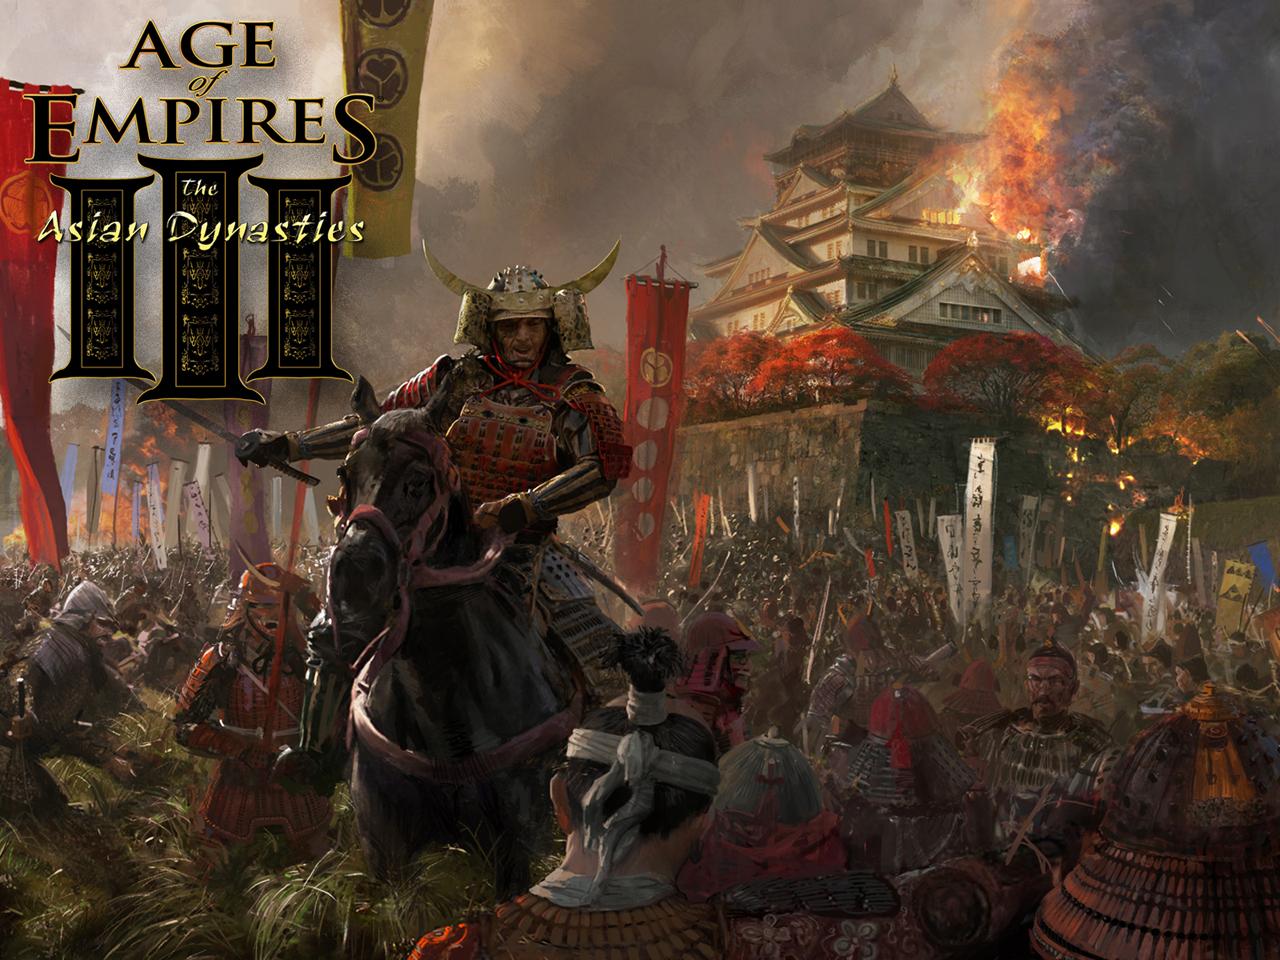 Fond d'ecran Age of Empires